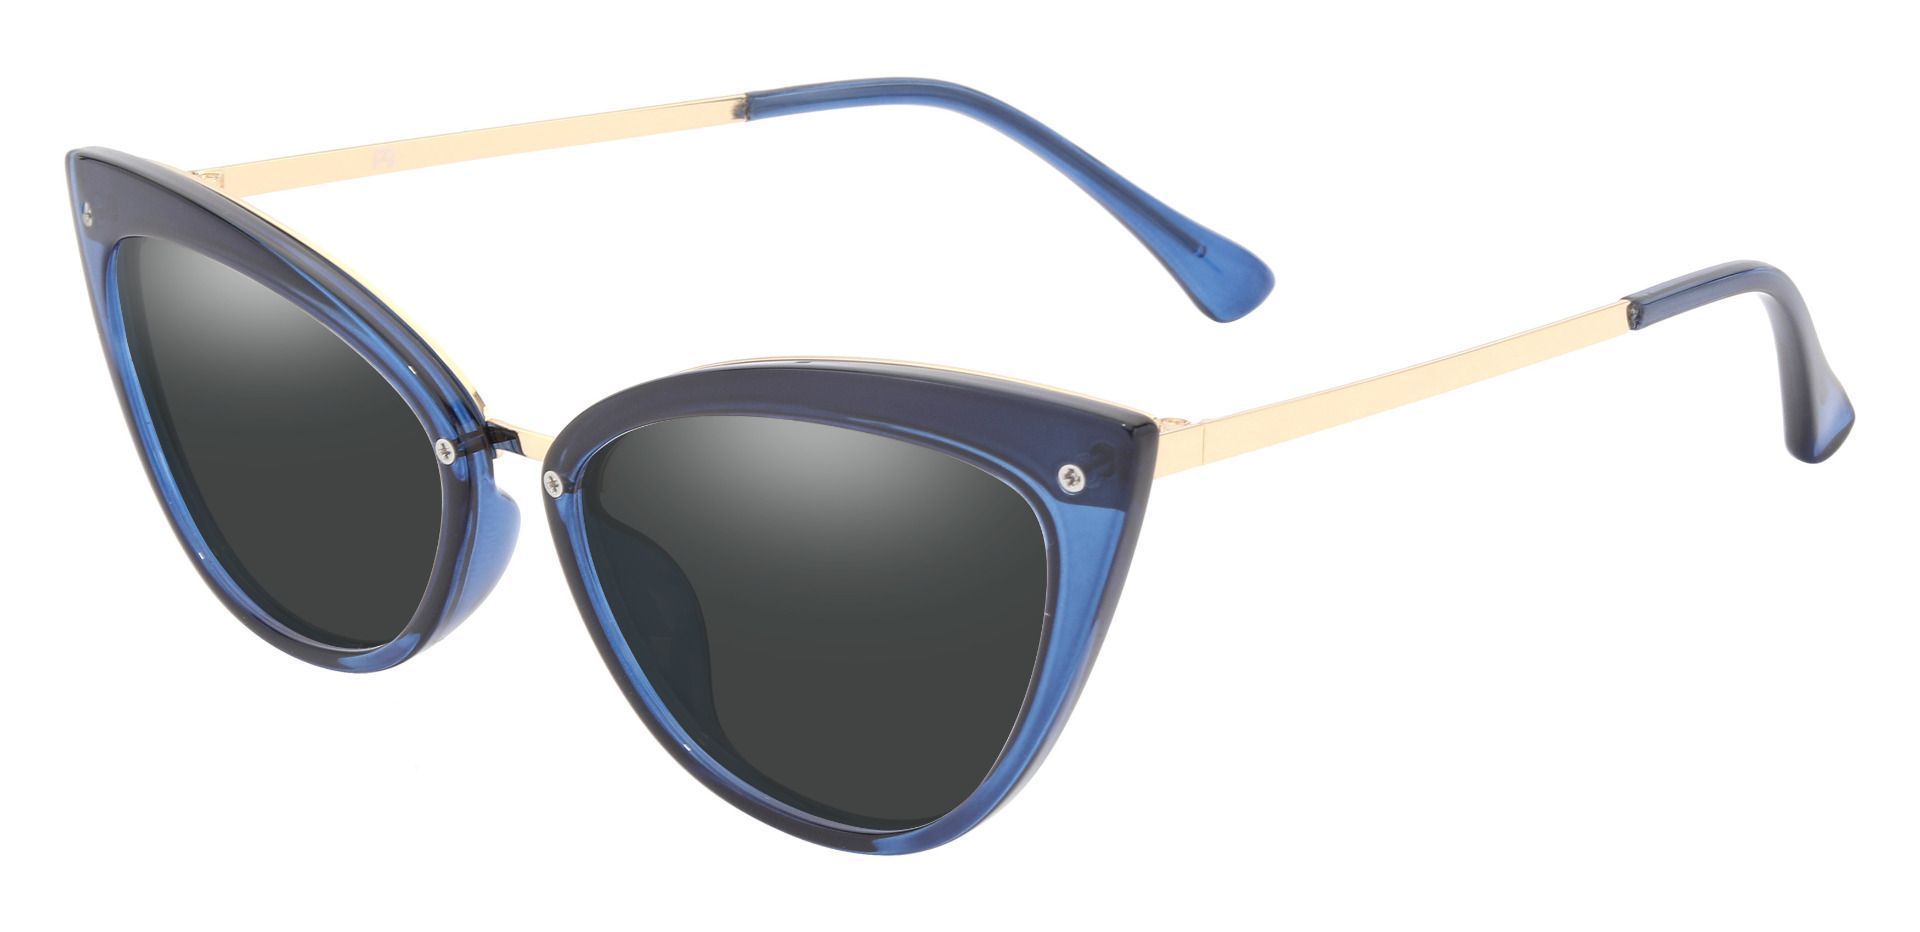 Glenda Cat Eye Prescription Sunglasses - Blue Frame With Gray Lenses